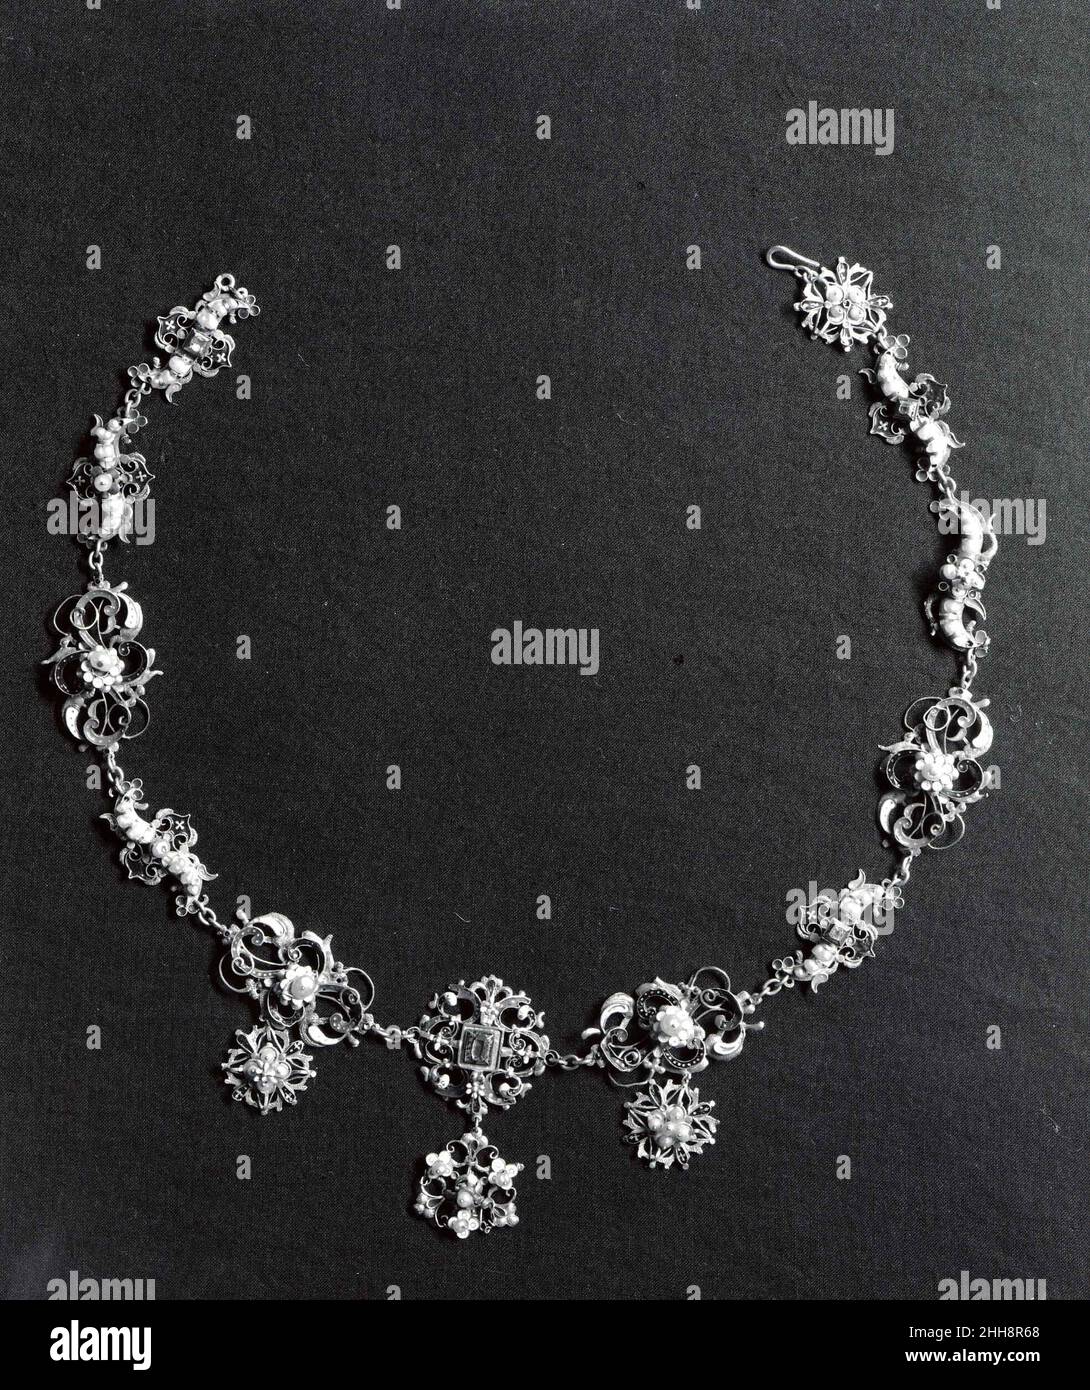 Halskette aus fünfzehn Kleiderornamenten um 1600 wahrscheinlich Siebenbürgisch, möglicherweise Süddeutschland Diese Halskette wurde, wahrscheinlich im 19. Jahrhundert, aus fünfzehn Kleiderornamenten aus dem frühen 17. Jahrhundert zusammengesetzt. Die Prävalenz dieser Ornamente, die als Boblar bezeichnet werden, in den Inventaren ungarischer Frauen des 16. Und 17. Jahrhunderts legt nahe, dass sie relativ preiswert waren, eine Theorie, die durch die minimale Verwendung von Edelmetall gestützt wird. Die Schmuckstücke wurden auf der Rückseite, vermutlich vom Hersteller, häufig mit Initialen markiert; im Falle des vorliegenden Werkes „GK“ und „HB“. Hals Stockfoto